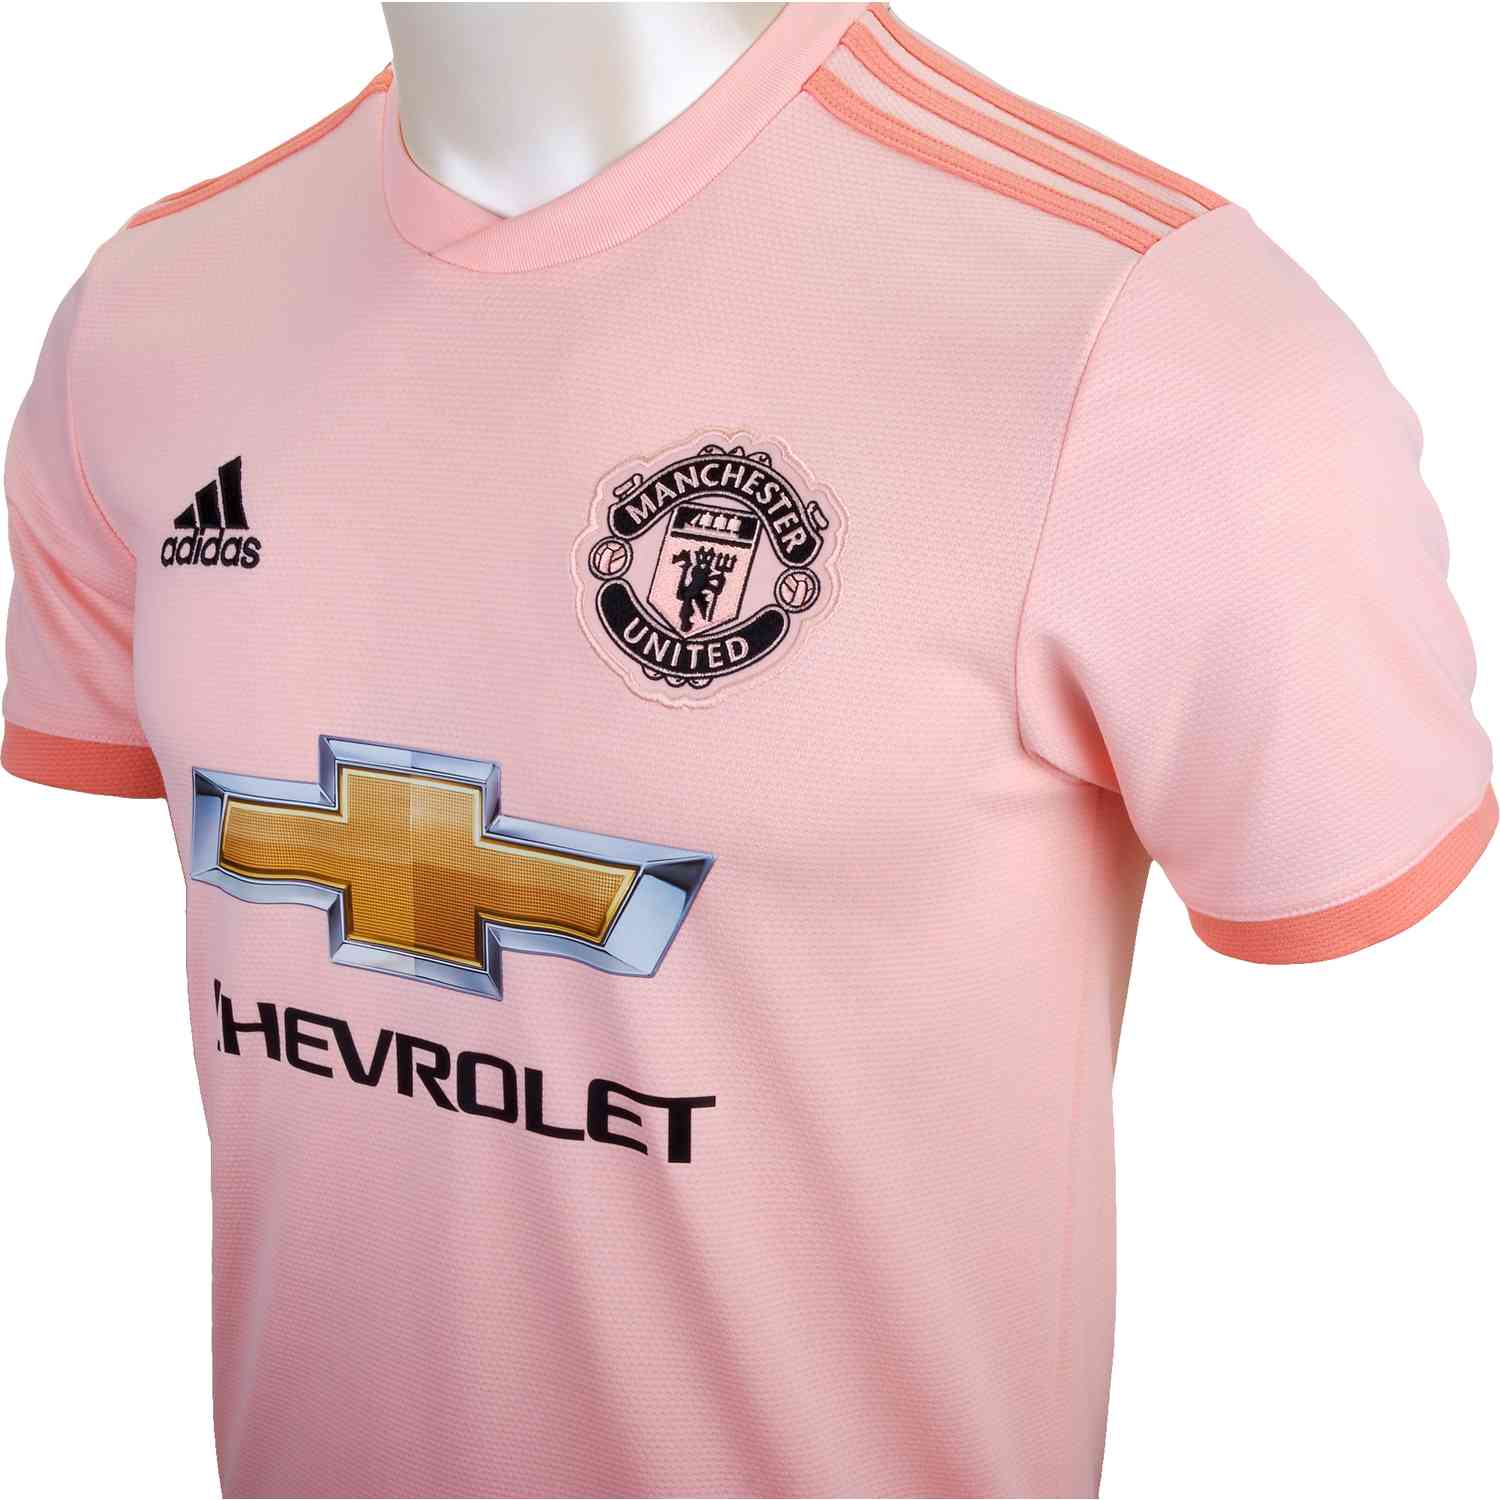 rashford pink jersey